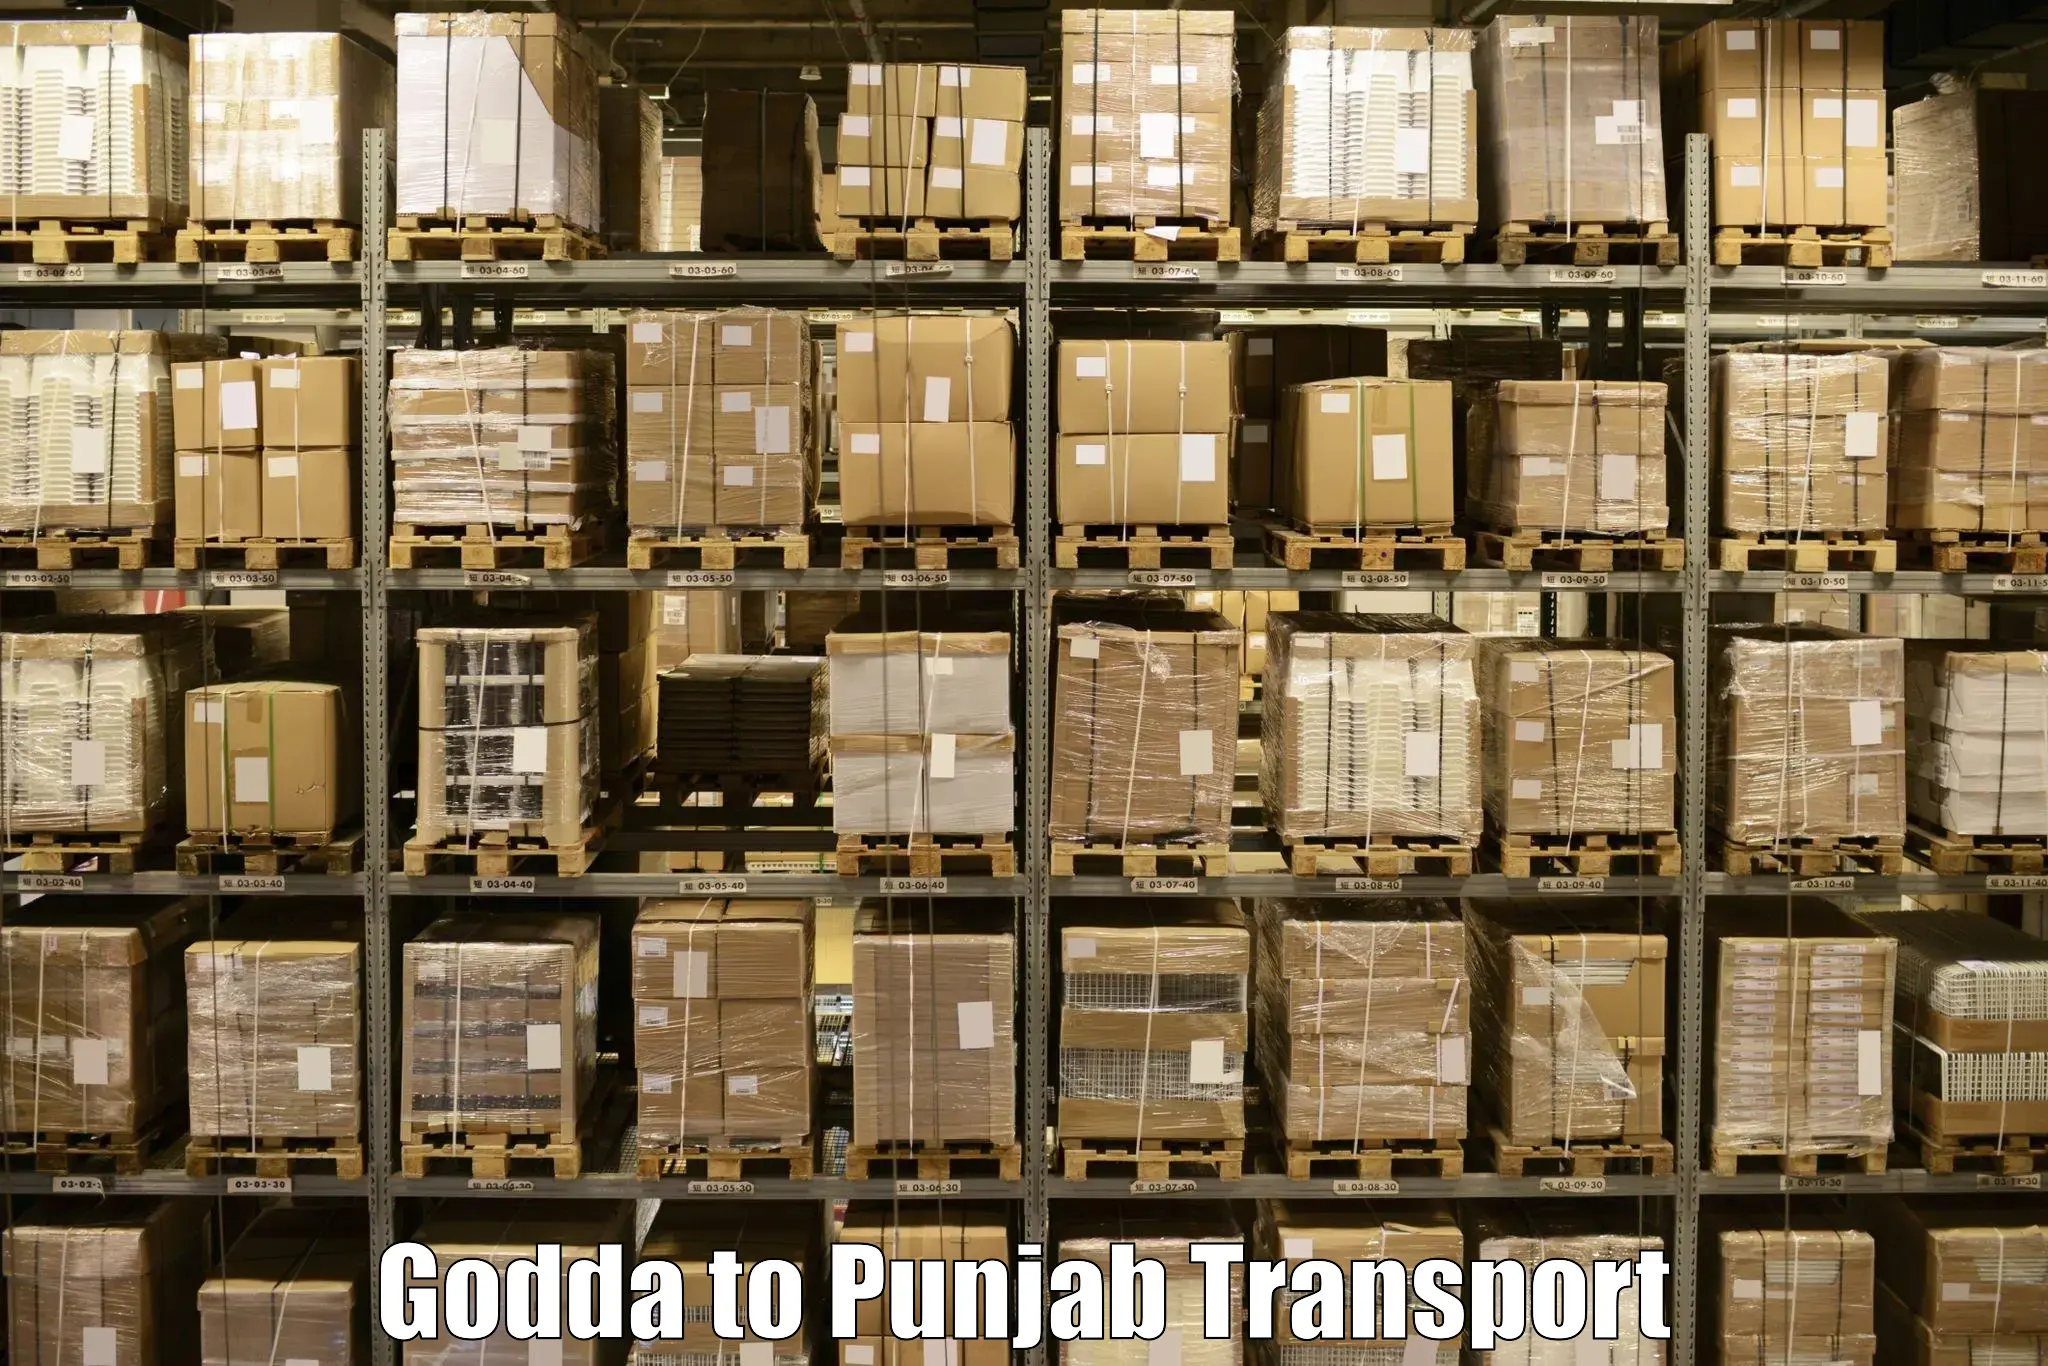 Domestic transport services Godda to Kotkapura